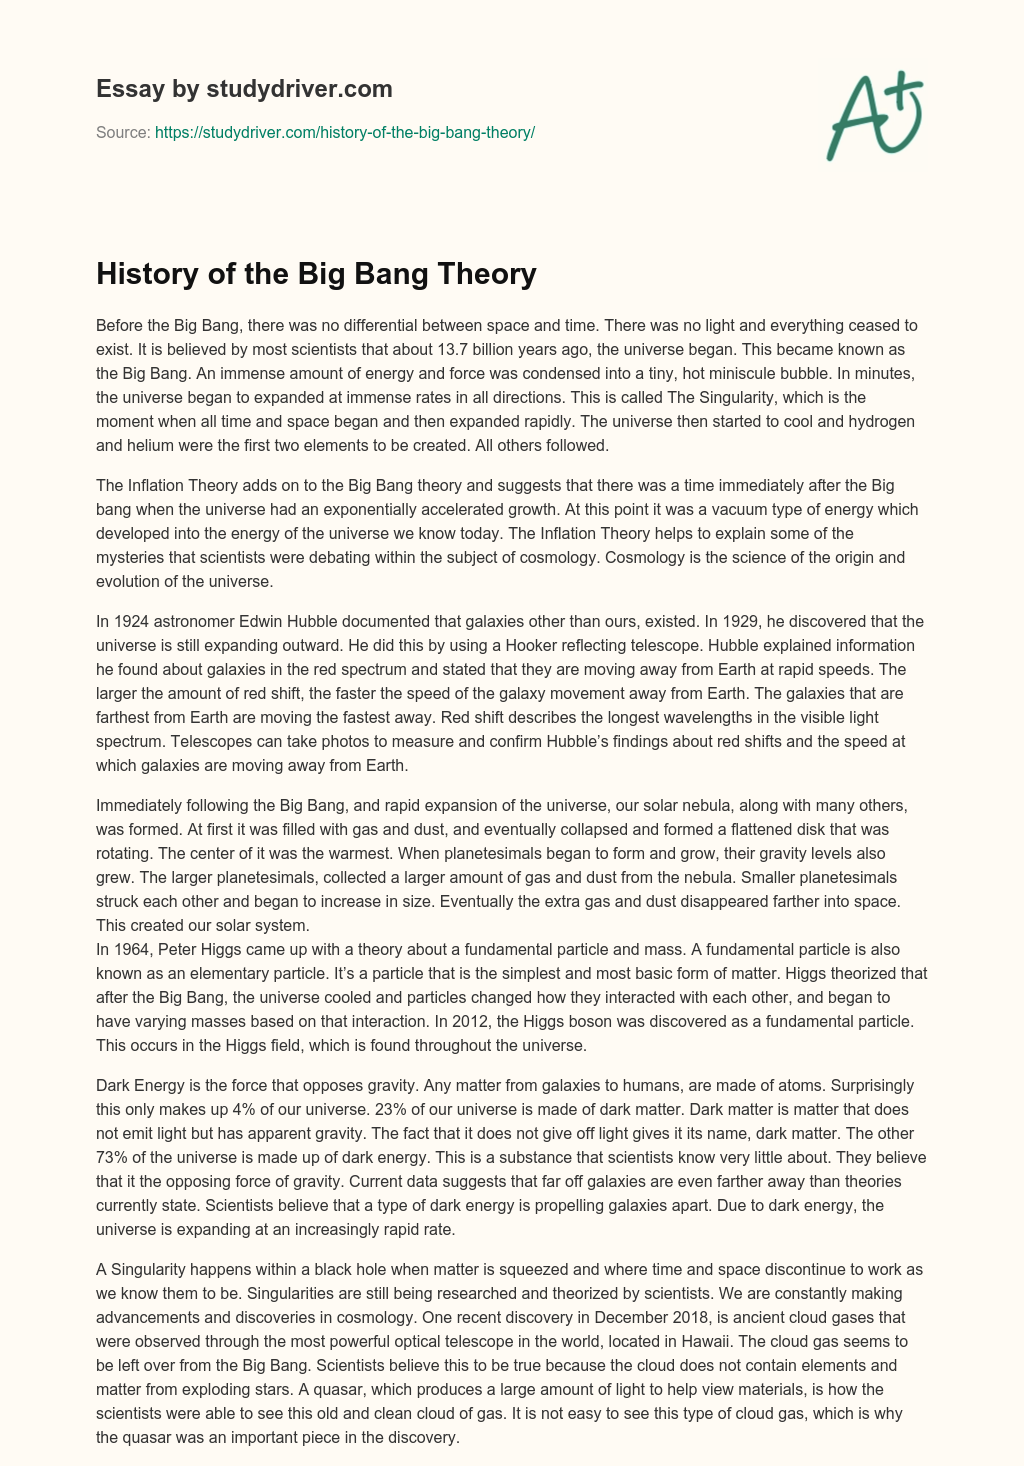 History of the Big Bang Theory essay